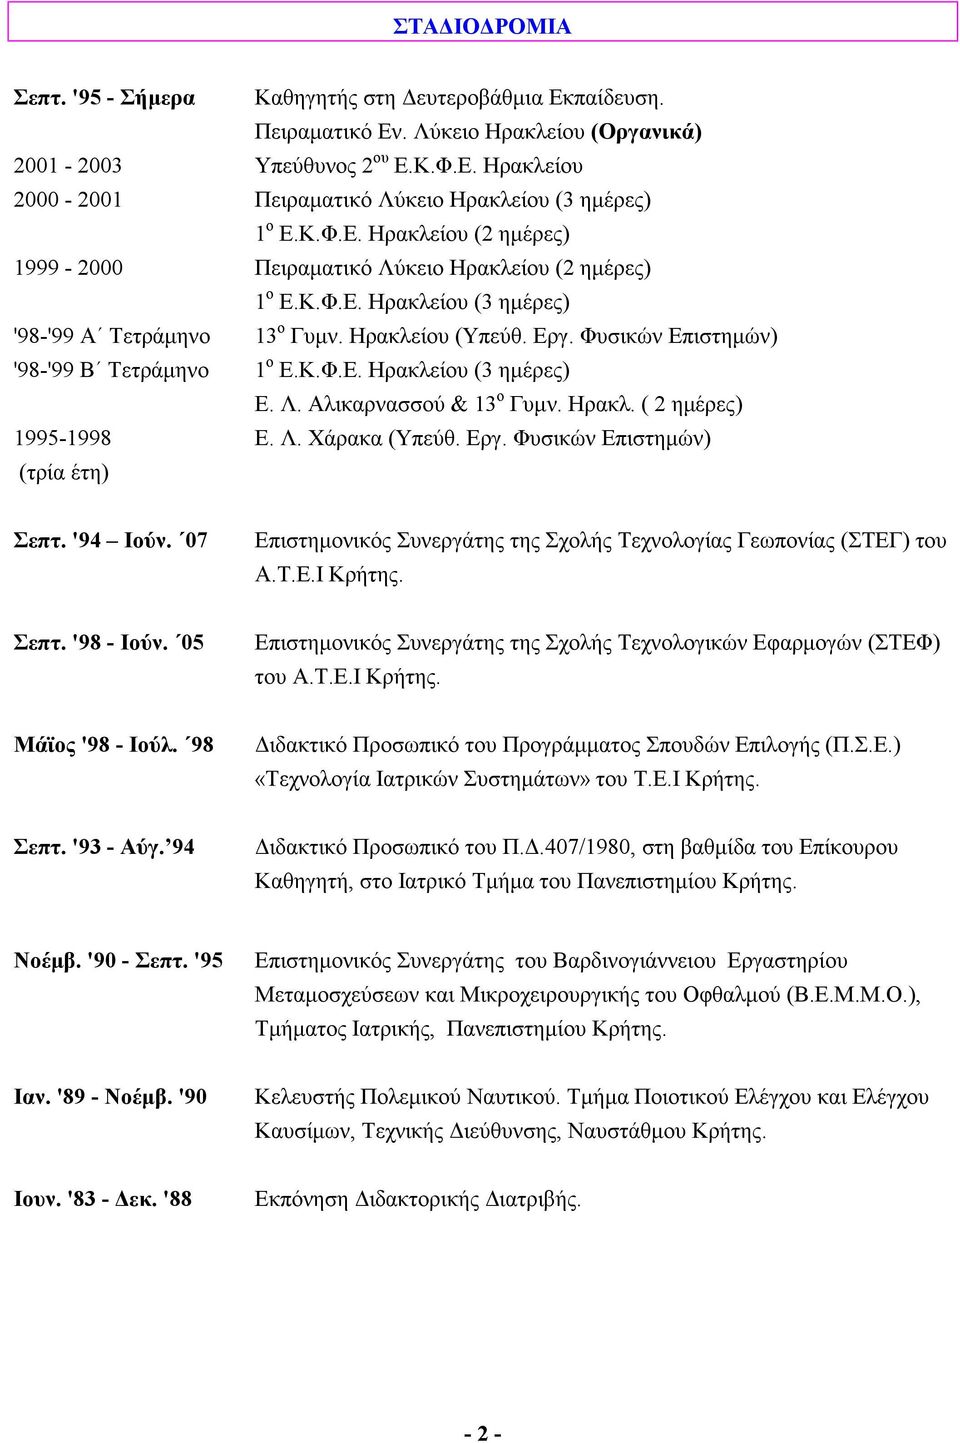 Φυσικών Επιστημών) '98-'99 Β Τετράμηνο 1 ο Ε.Κ.Φ.Ε. Ηρακλείου (3 ημέρες) E. Λ. Αλικαρνασσού & 13 ο Γυμν. Ηρακλ. ( 2 ημέρες) 1995-1998 E. Λ. Χάρακα (Υπεύθ. Εργ. Φυσικών Επιστημών) (τρία έτη) Σεπτ.